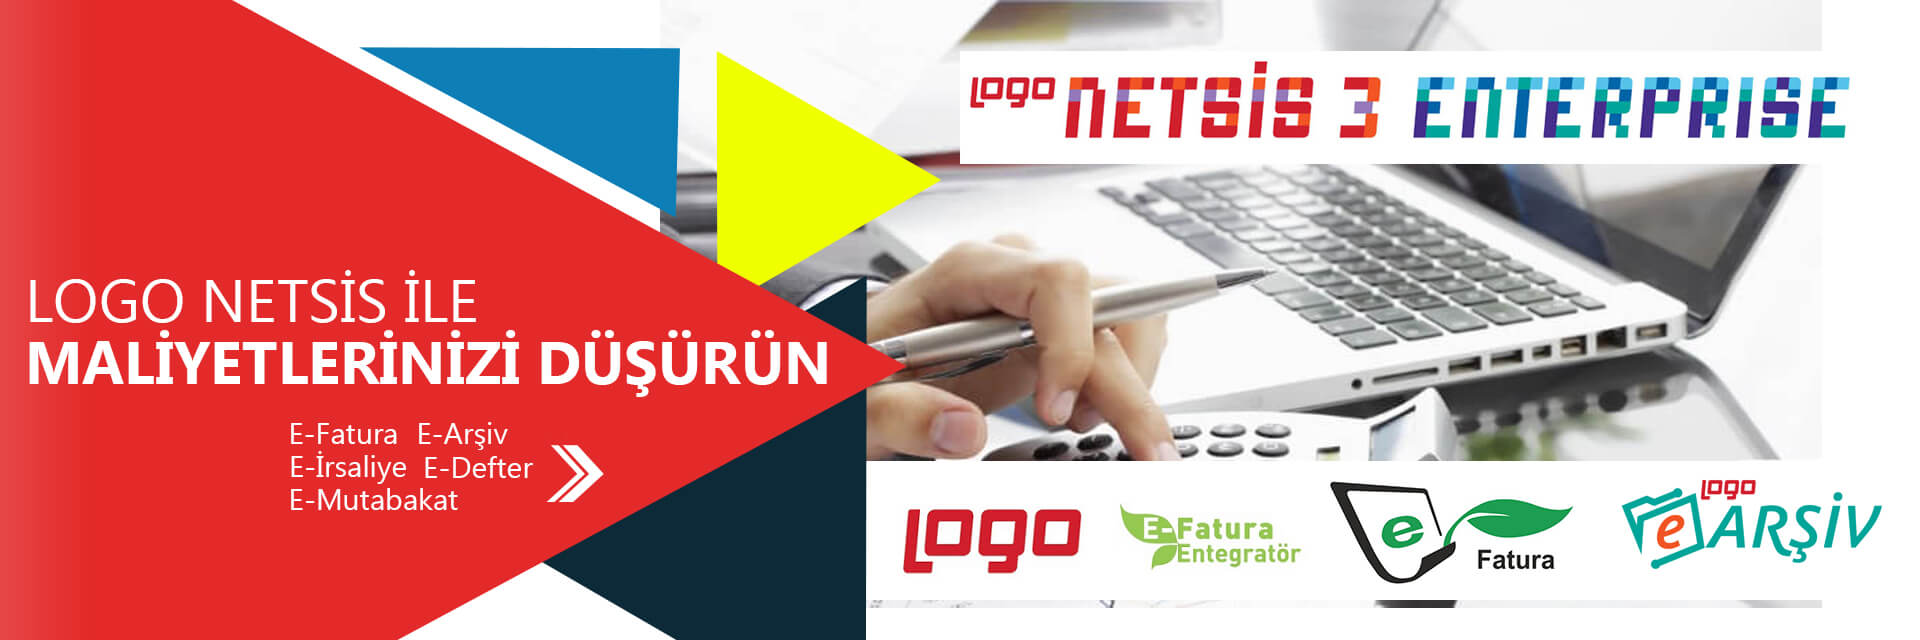 Logo Netsis İle Maliyetlerinizi Düşürün logo netsis ile maliyetlerinizi düşürün LOGO NETSİS İLE MALİYETLERİNİZİ DÜŞÜRÜN